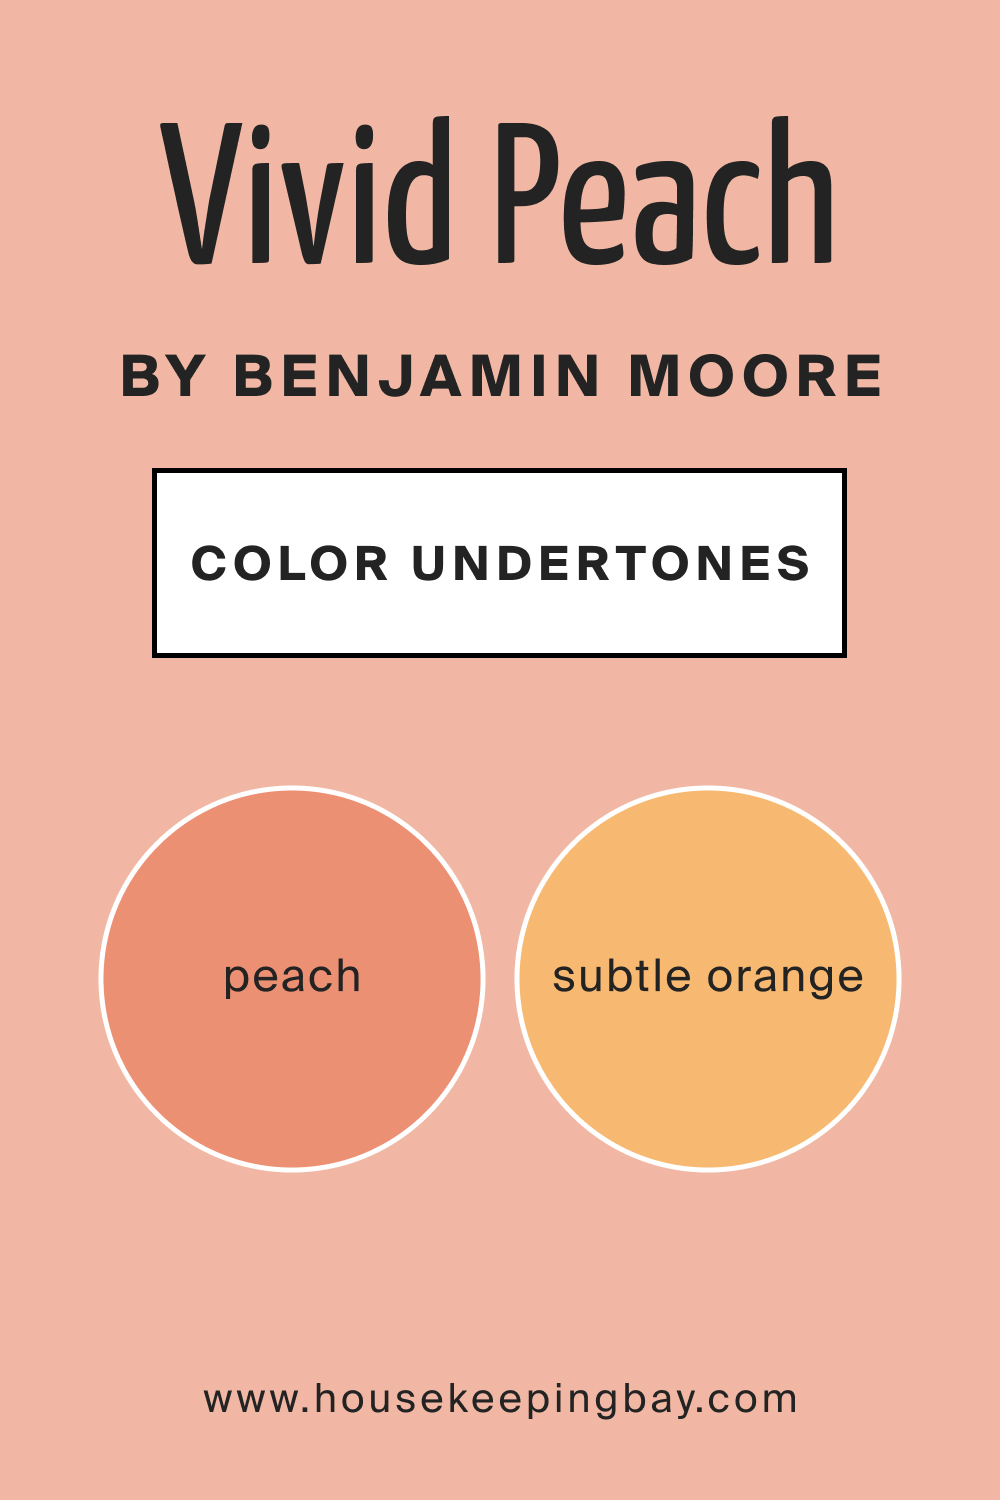 Vivid Peach 025 by Benjamin Moore Undertone